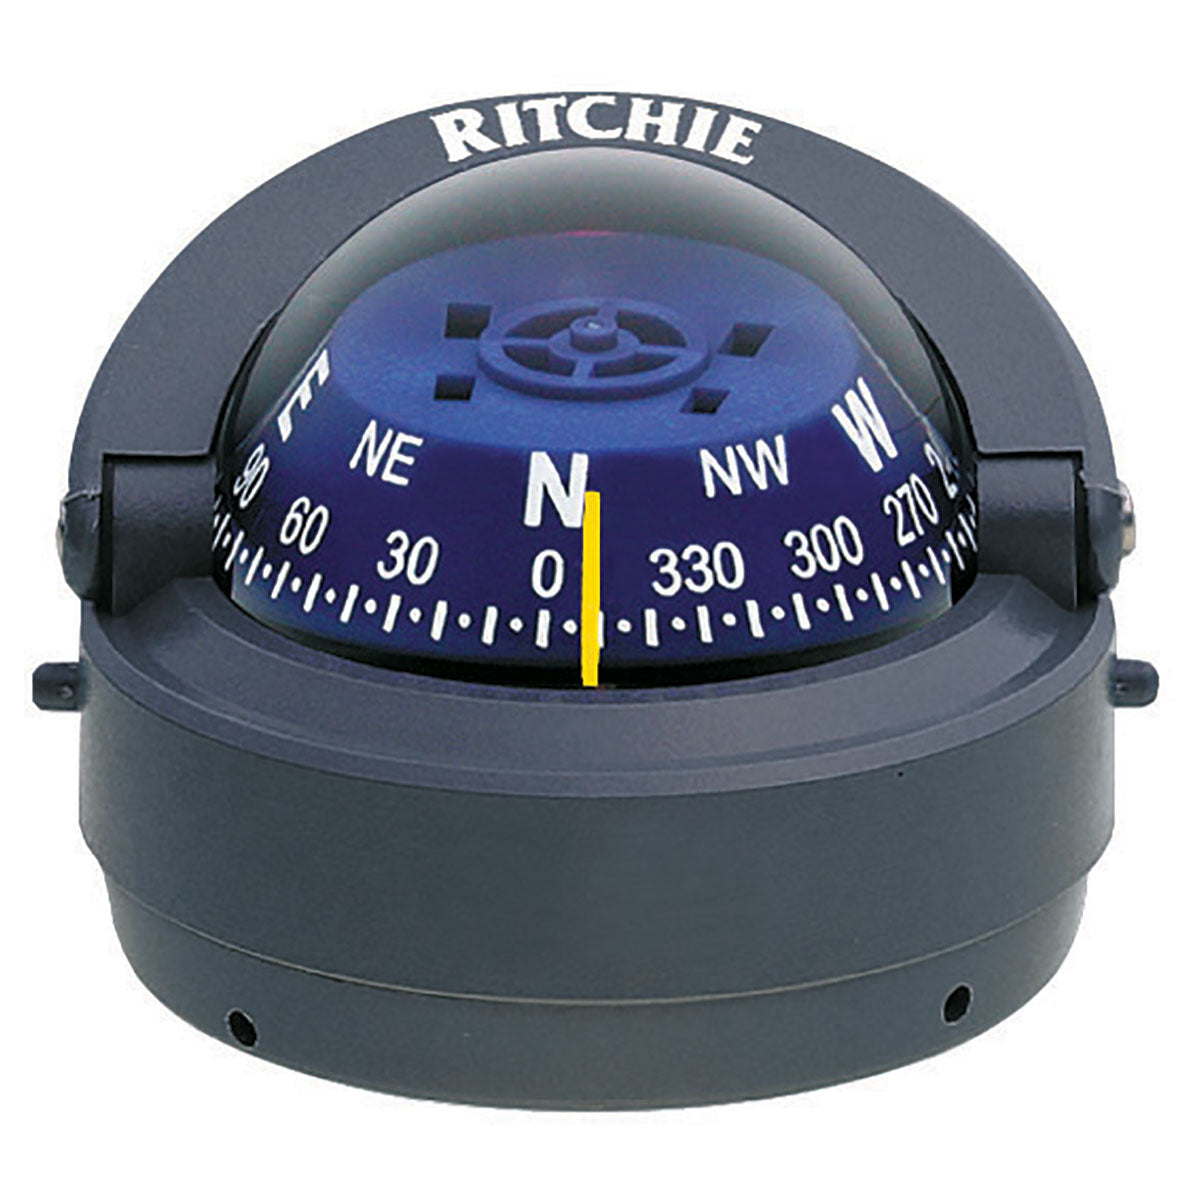 Ritchie S-53 Explorer Compass - Surface Mount